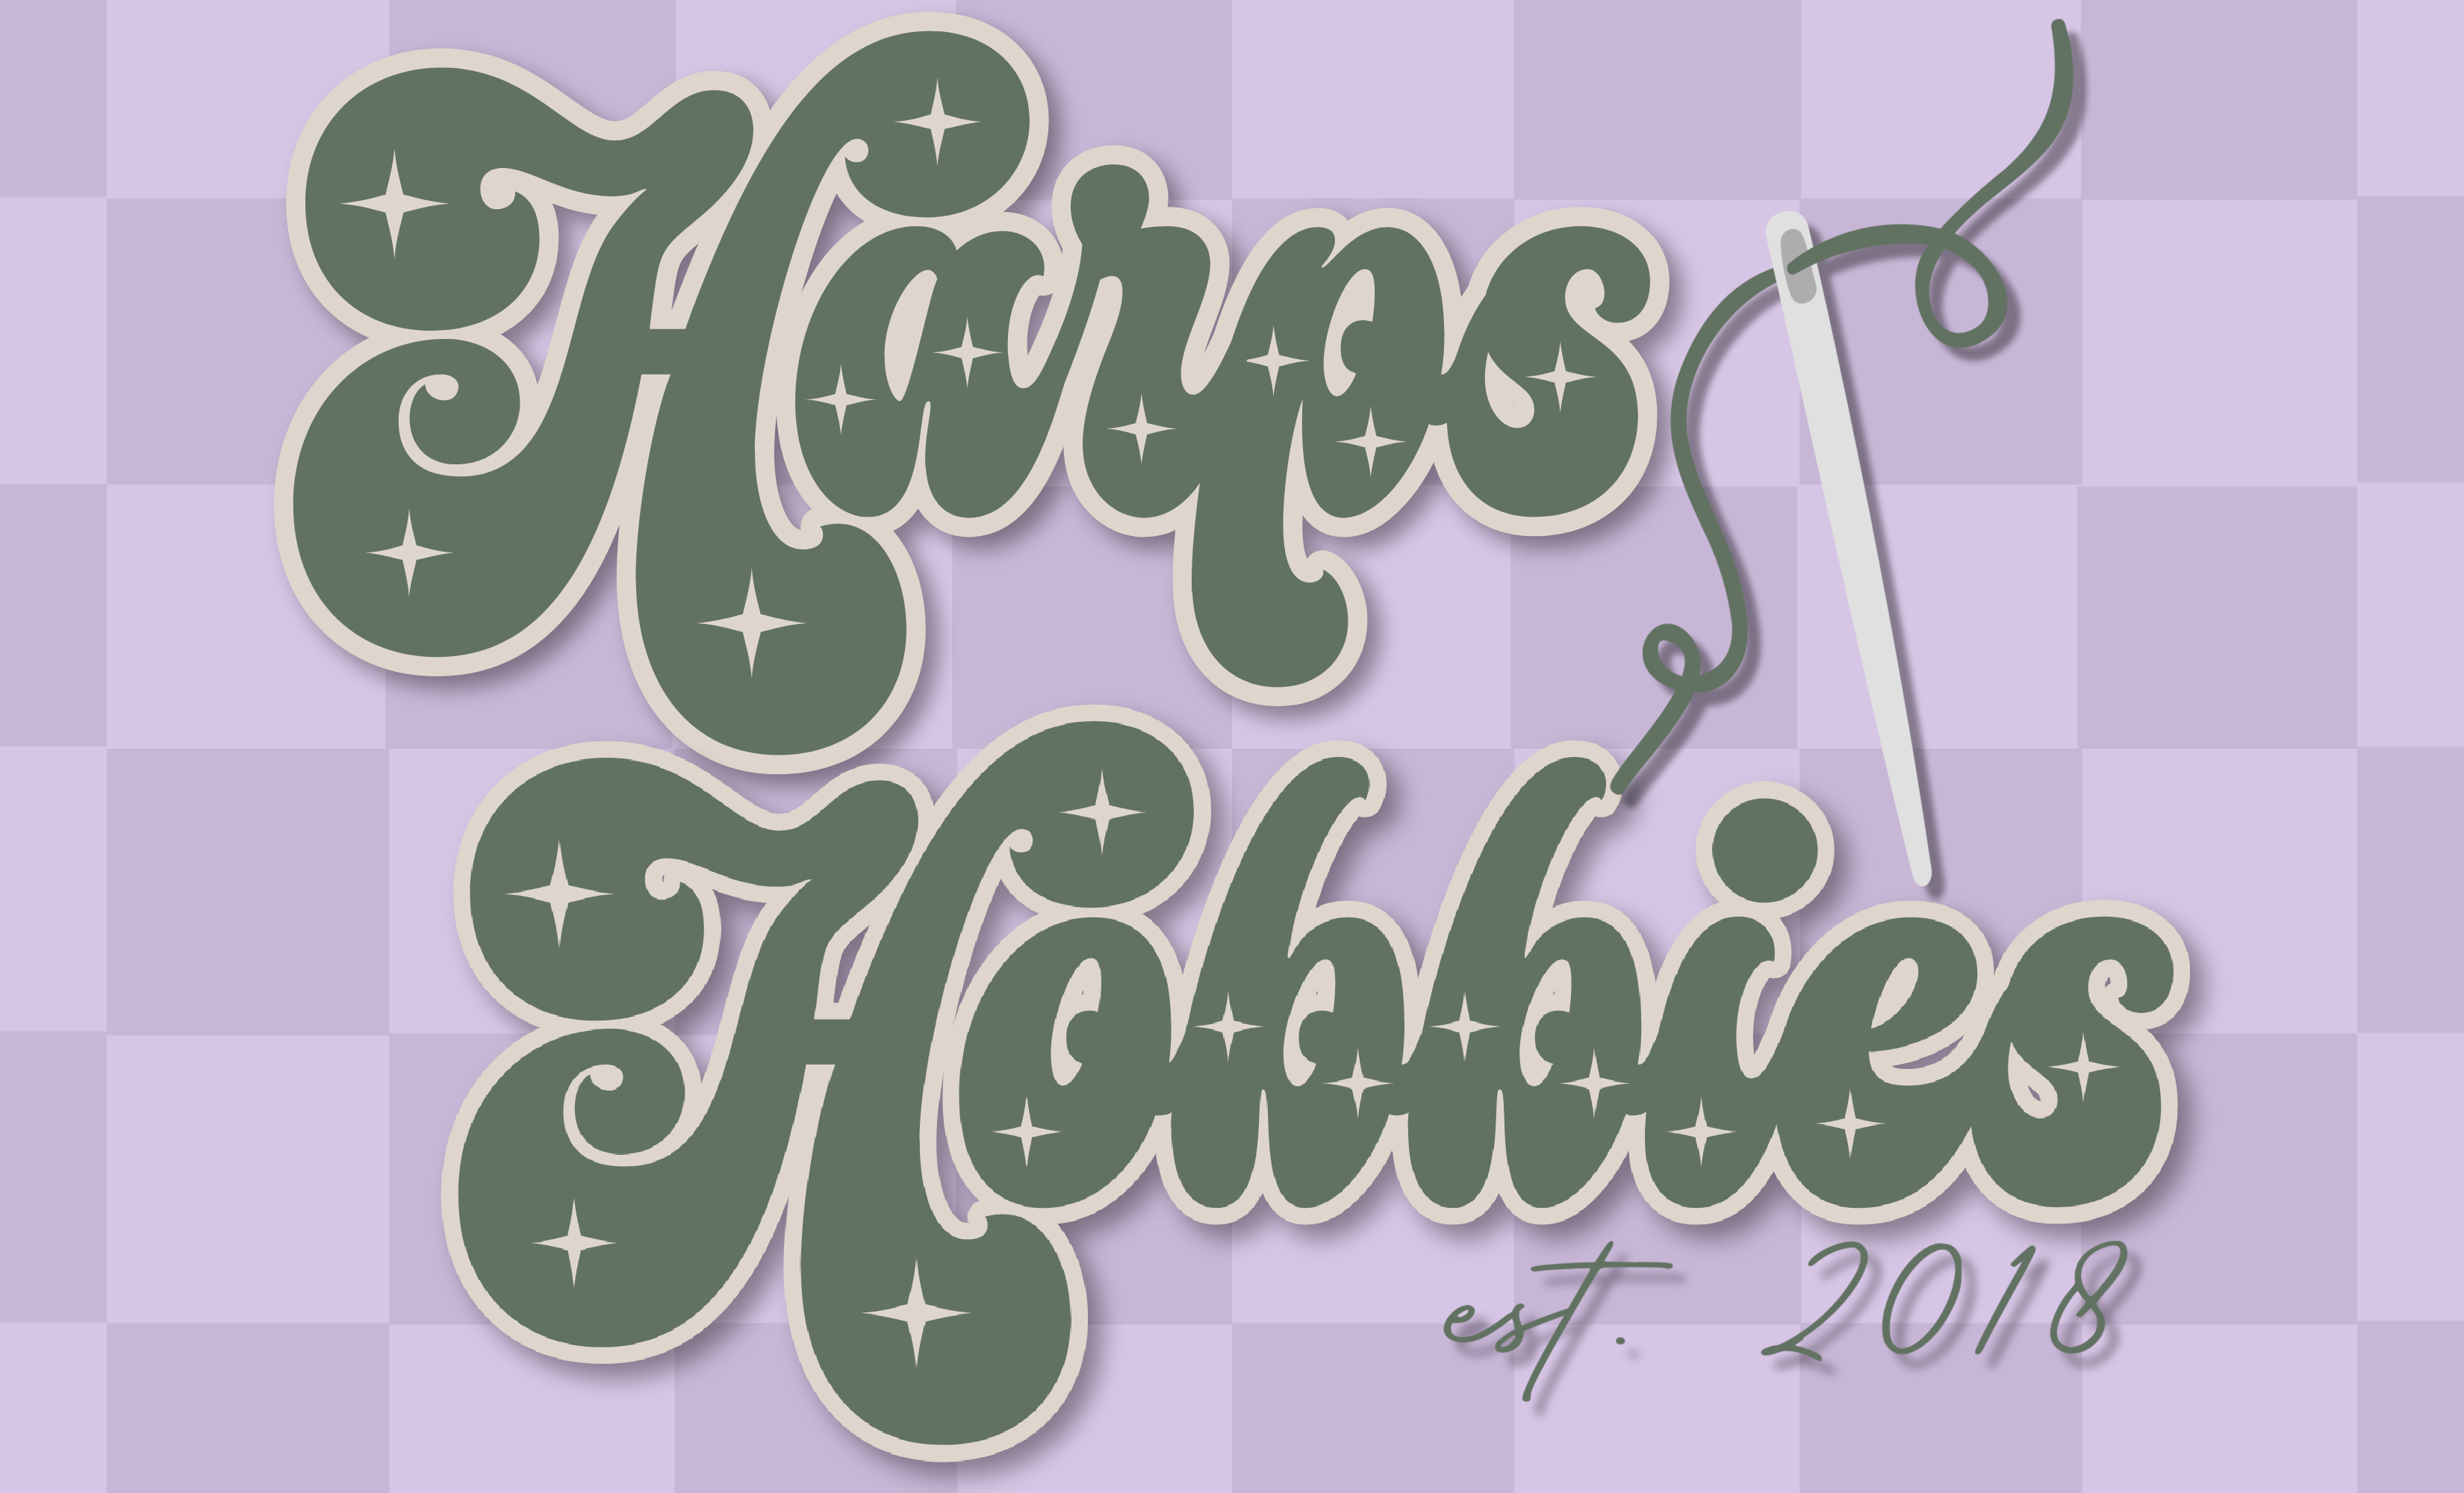 HarpsHobbies